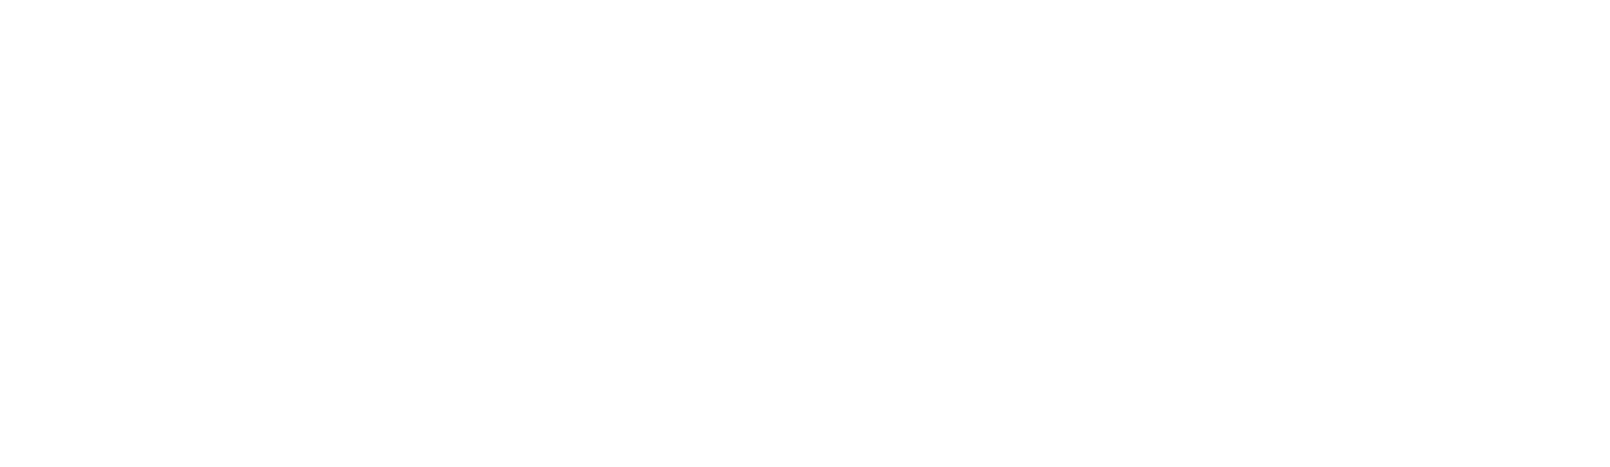 ASOS logo large for dark backgrounds (transparent PNG)